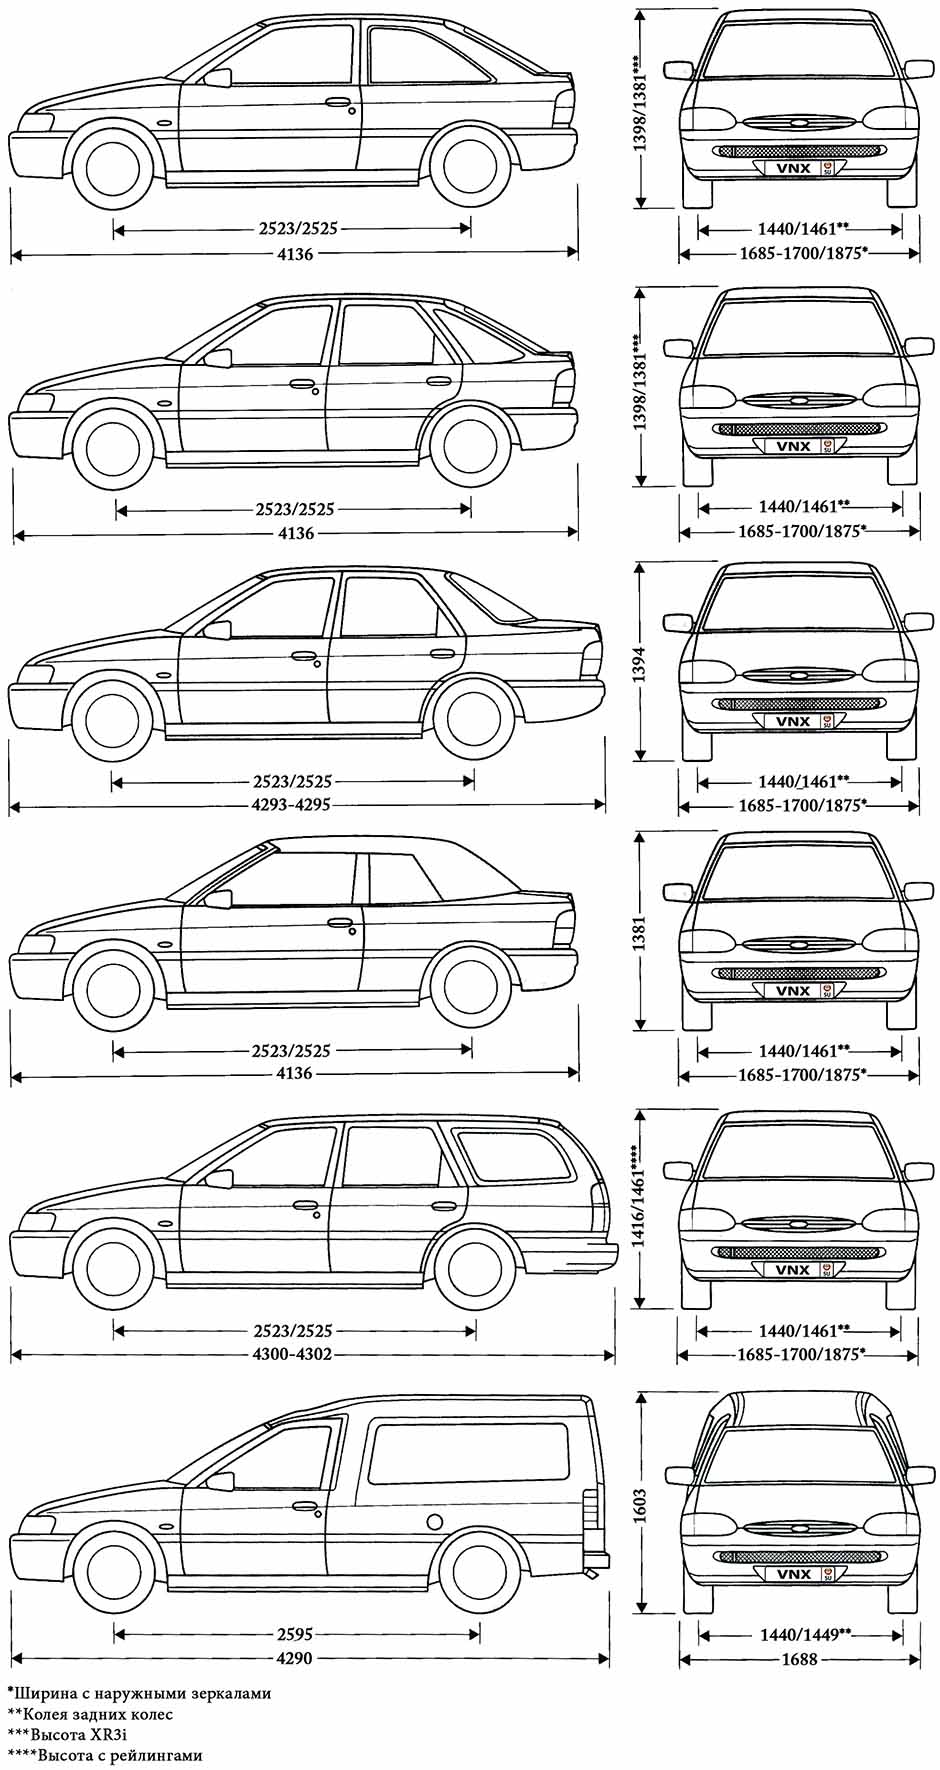 Технические характеристики Ford Escort. Все модификации